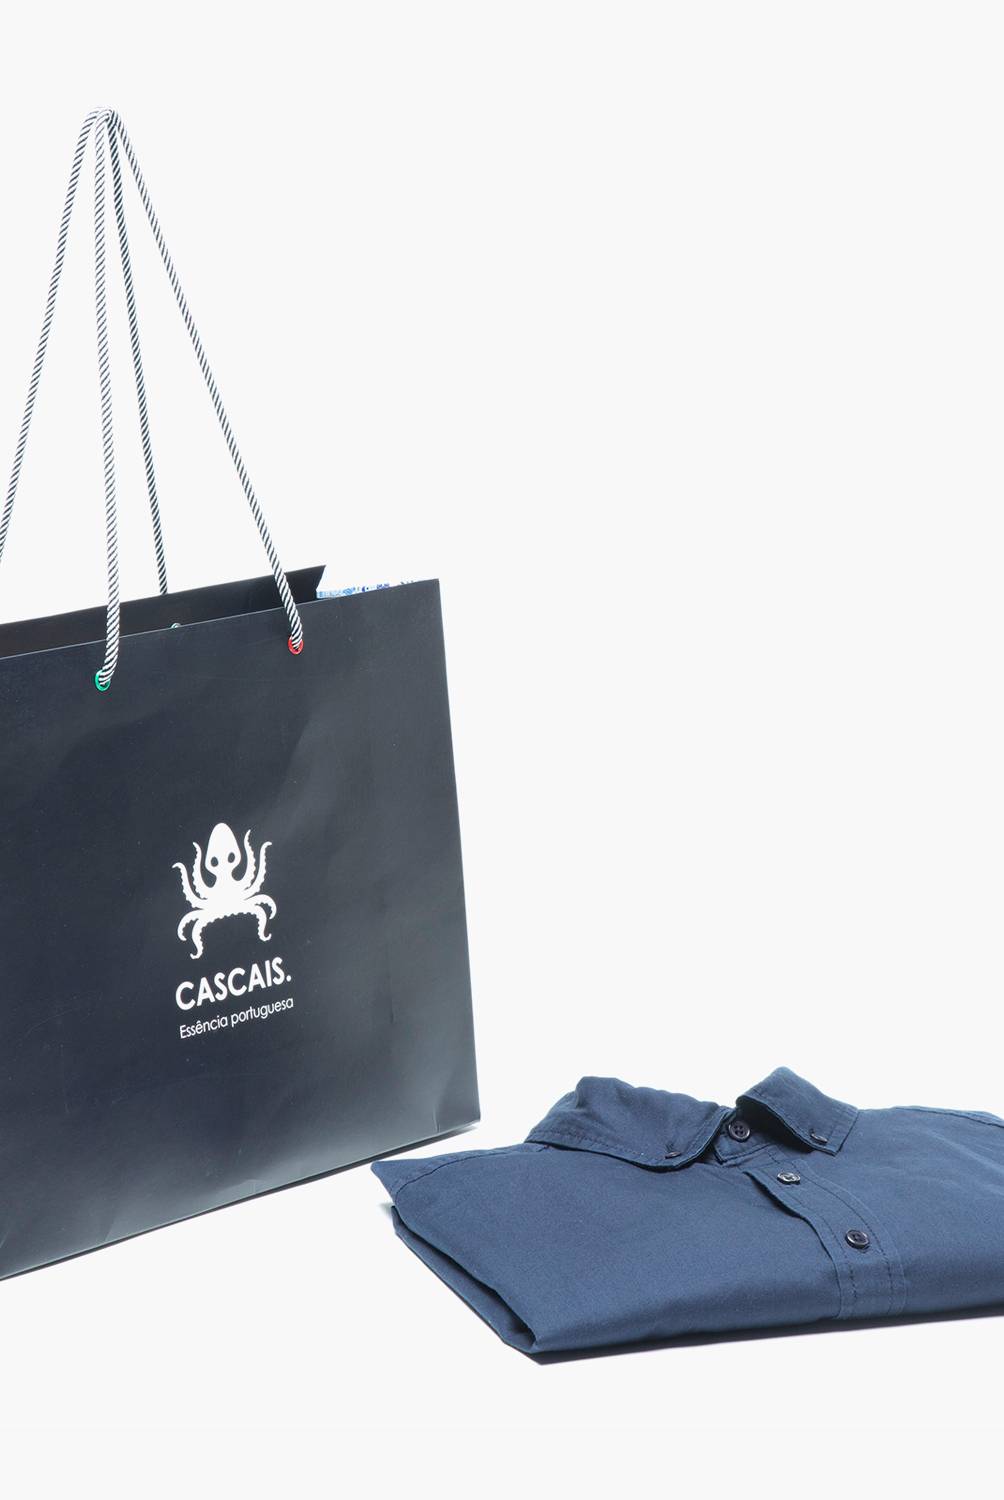 CASCAIS - Camisa 100% Algodón